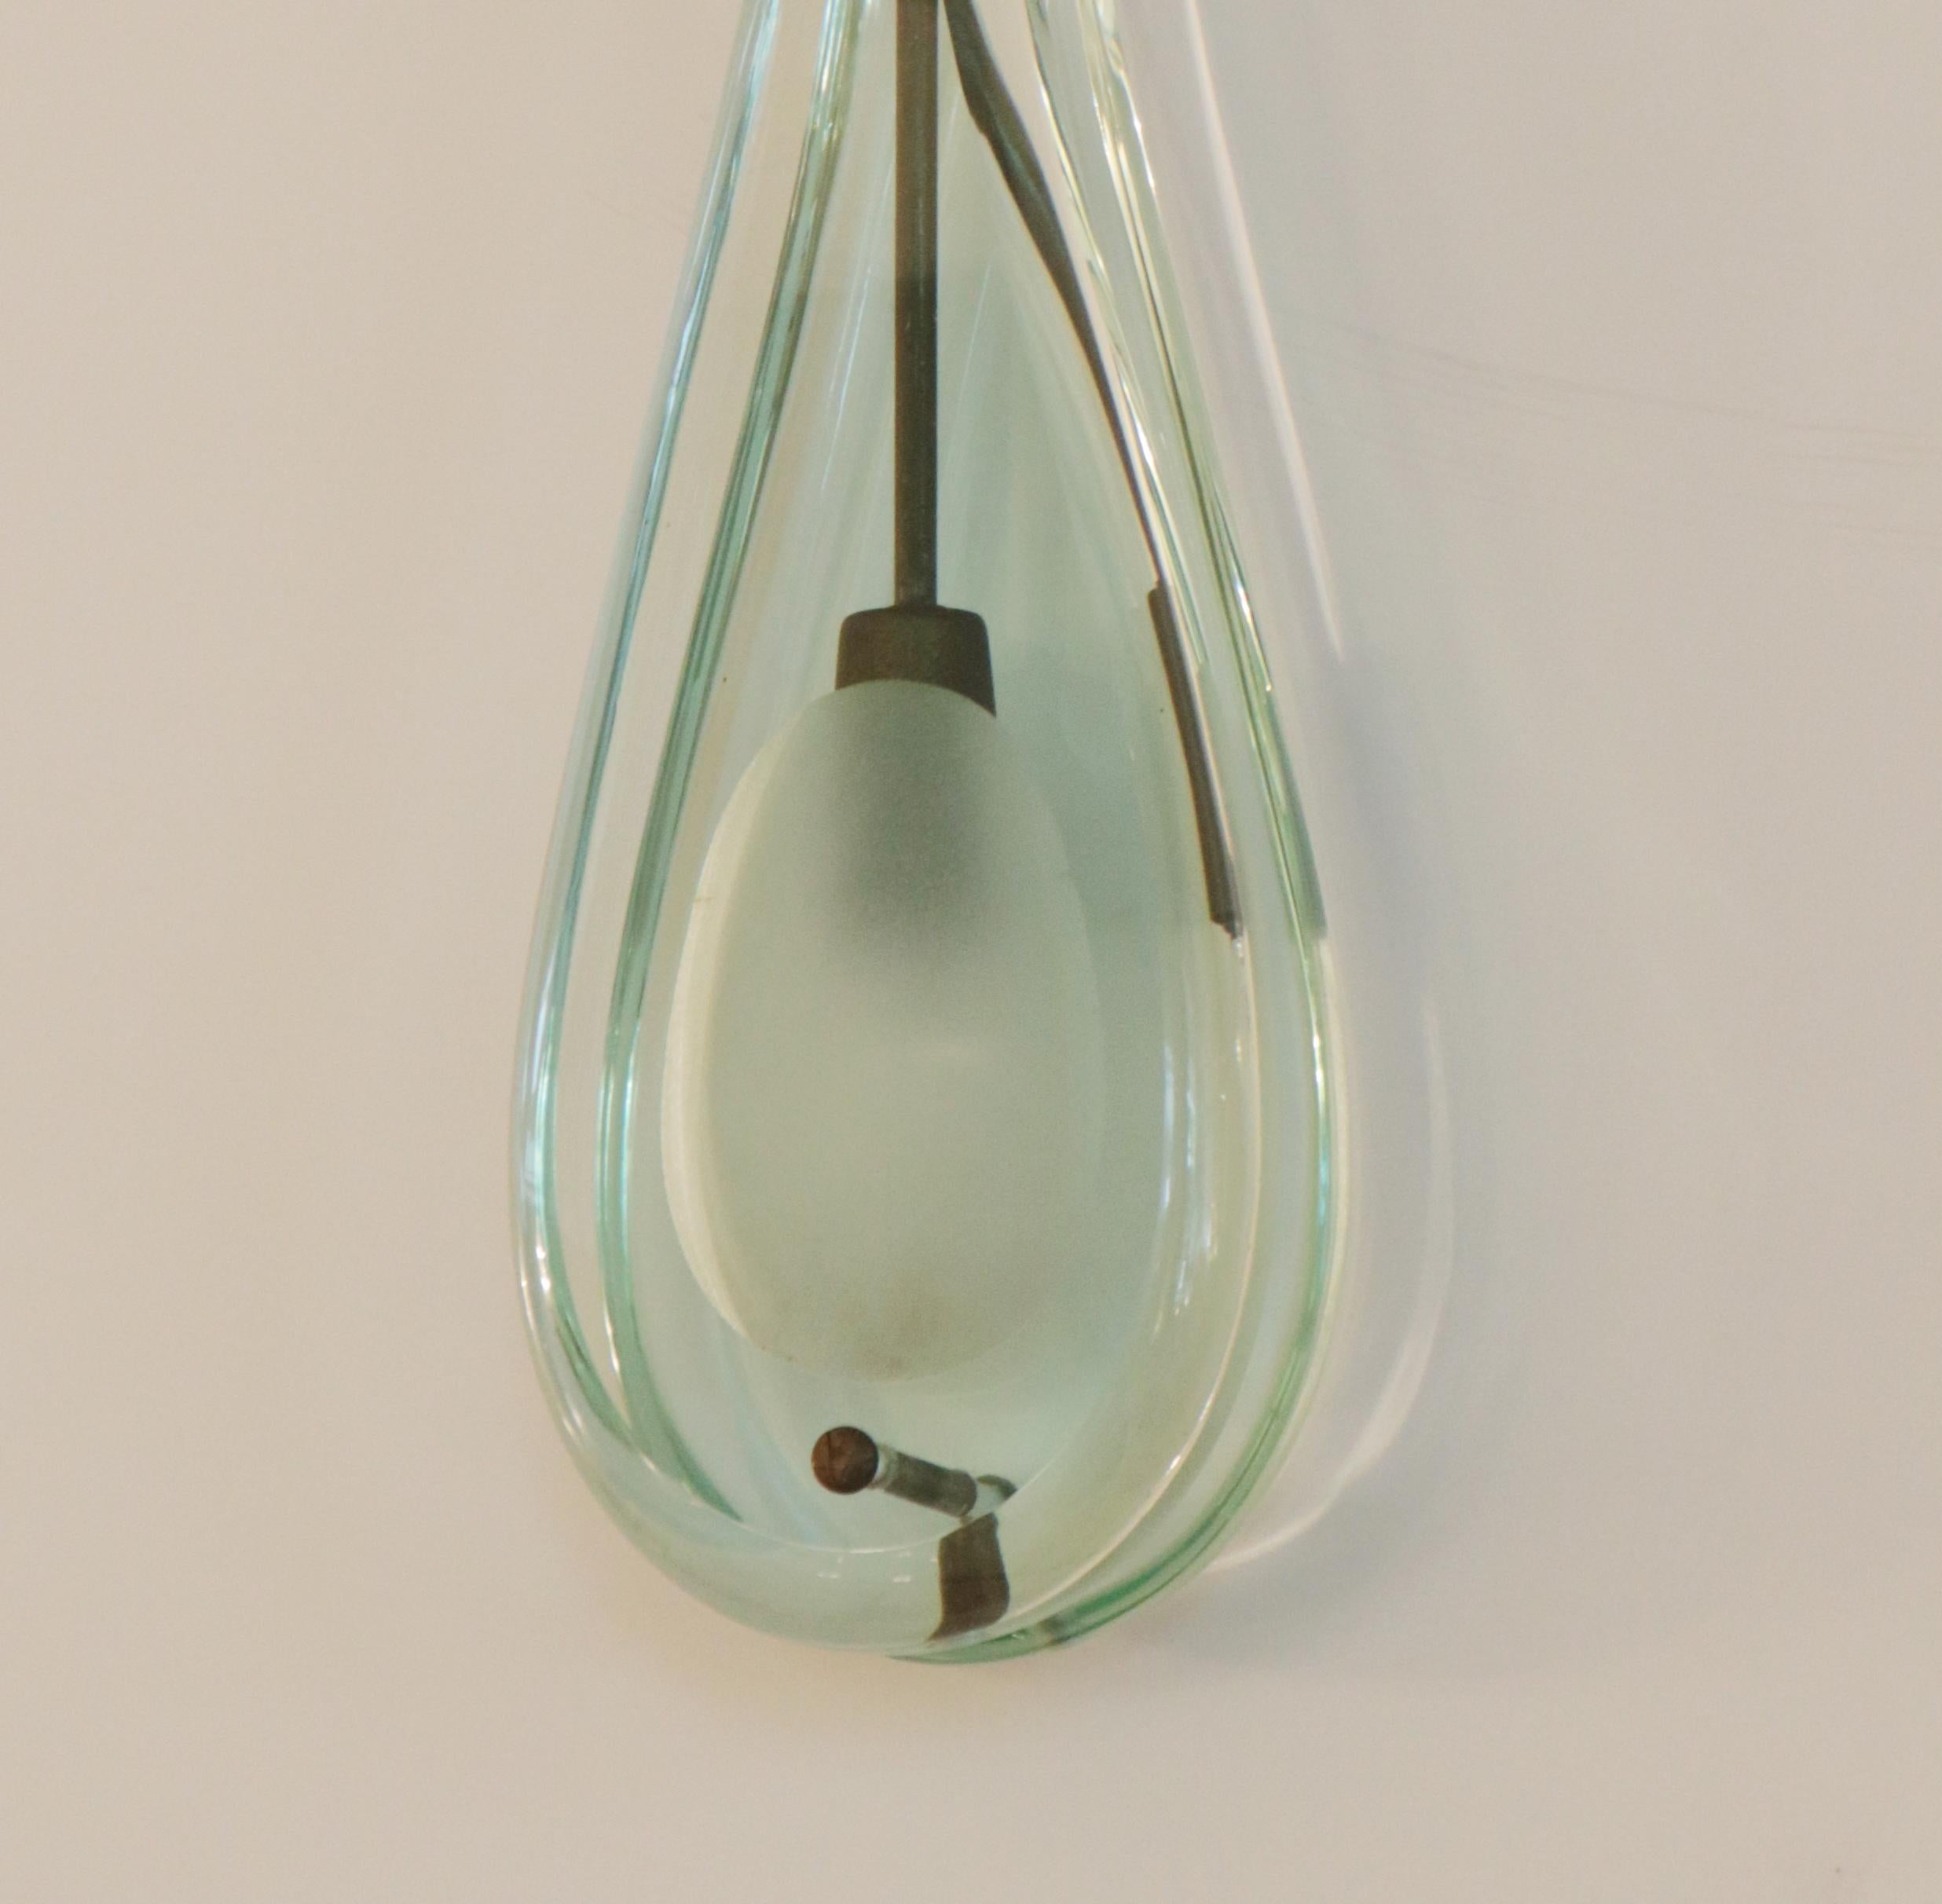 Teardrop-Anhänger Modell # 2259 von Max Ingrand 
und von Fontana Arte hergestellt.
Klares und mattiertes Glas mit patinierten Messingbeschlägen.